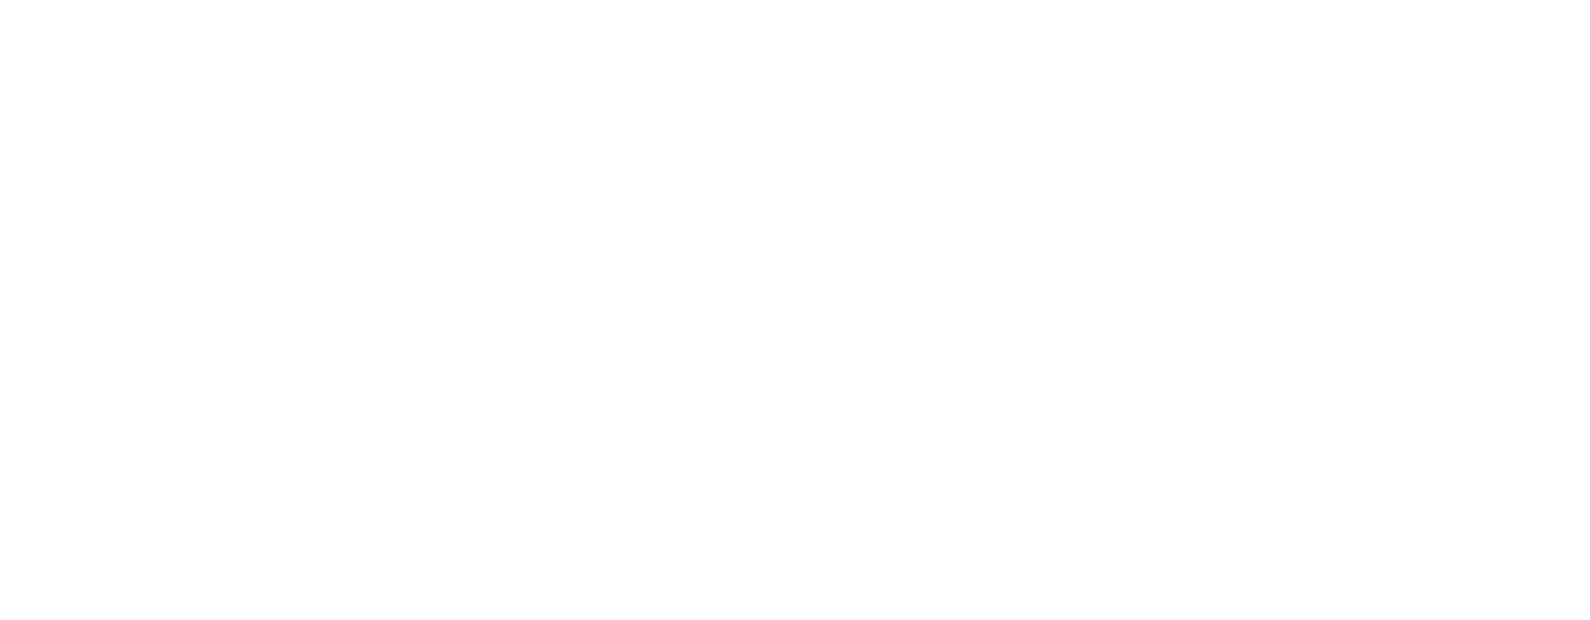 Desktop Metal logo for dark backgrounds (transparent PNG)